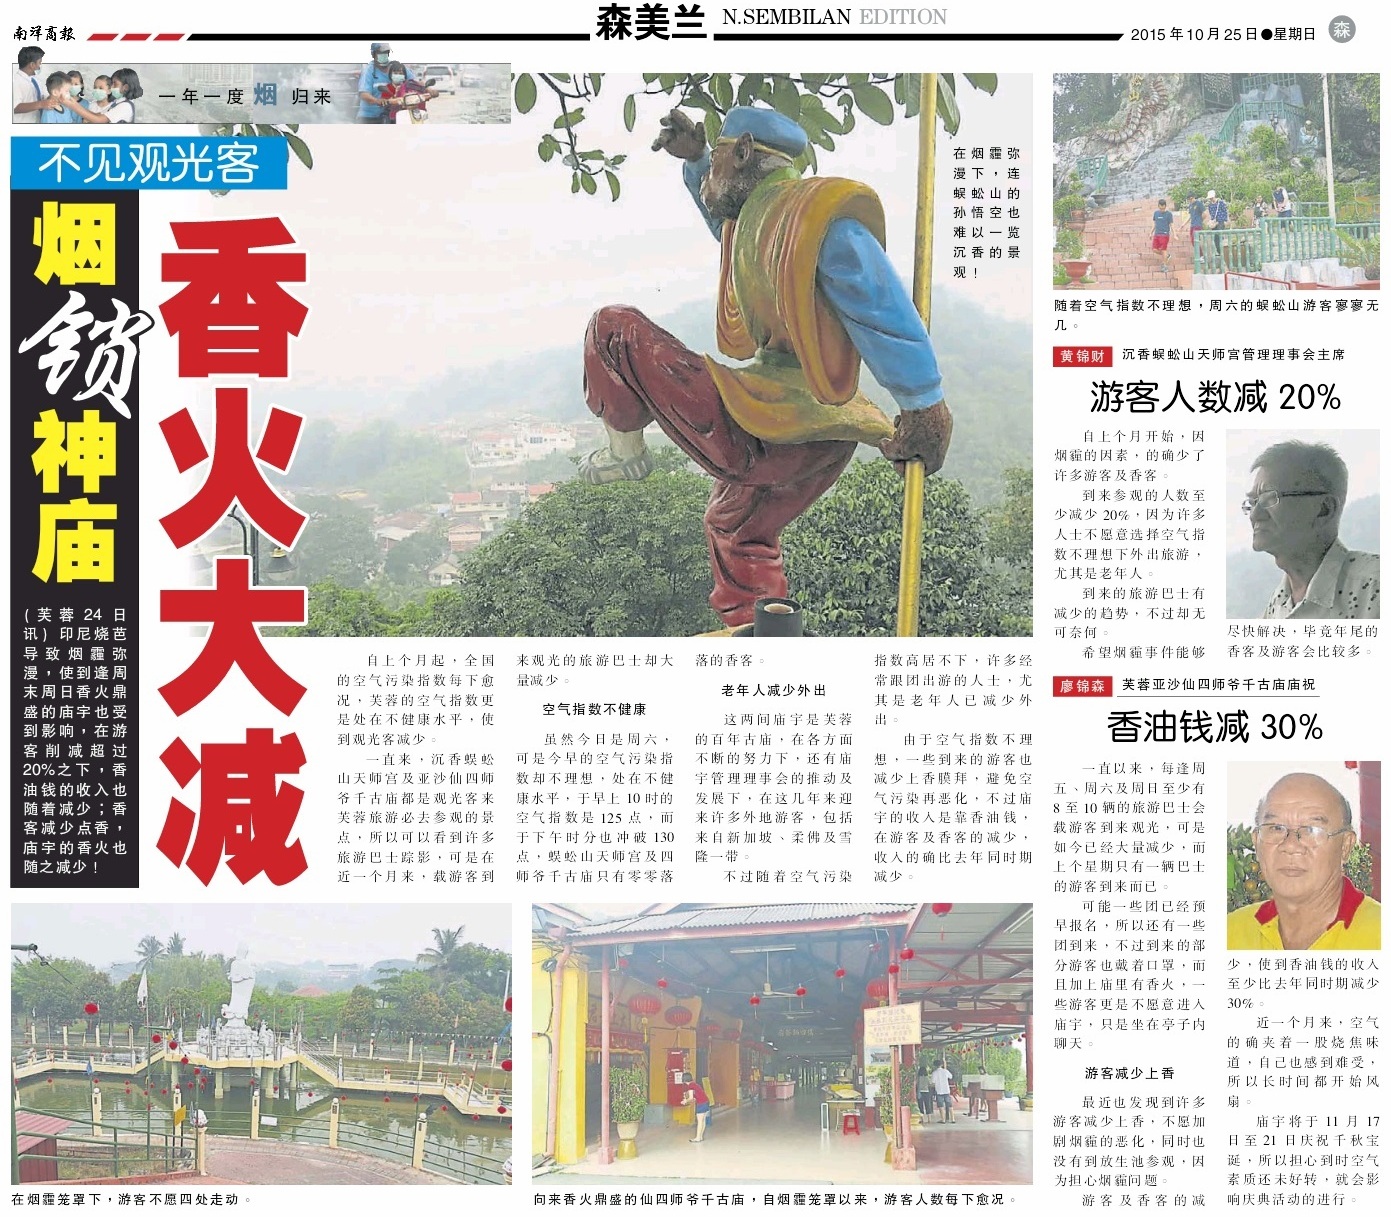 烟霾影响神庙香火, 游客人数大减 (25.10.2015 南洋商报)